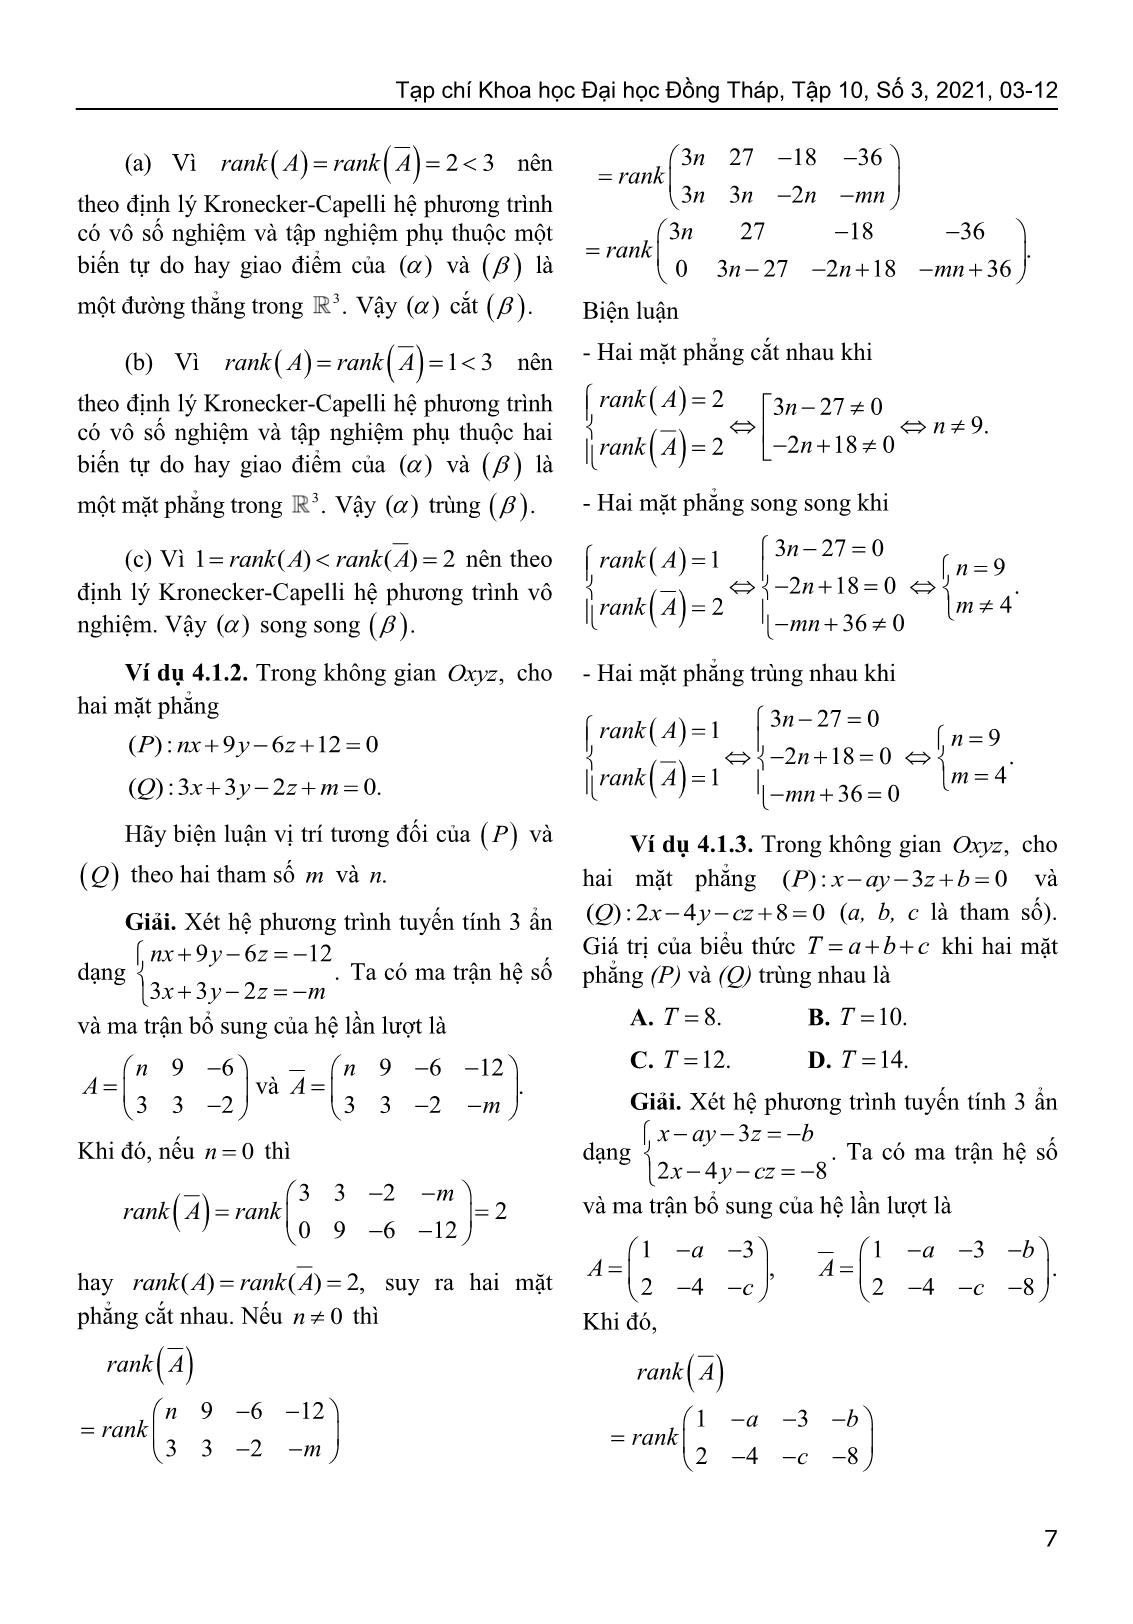 Sử dụng định lý Kronecker-Capelli giải bài toán về vị trí tương đối của hình học giải tích trong không gian trang 5